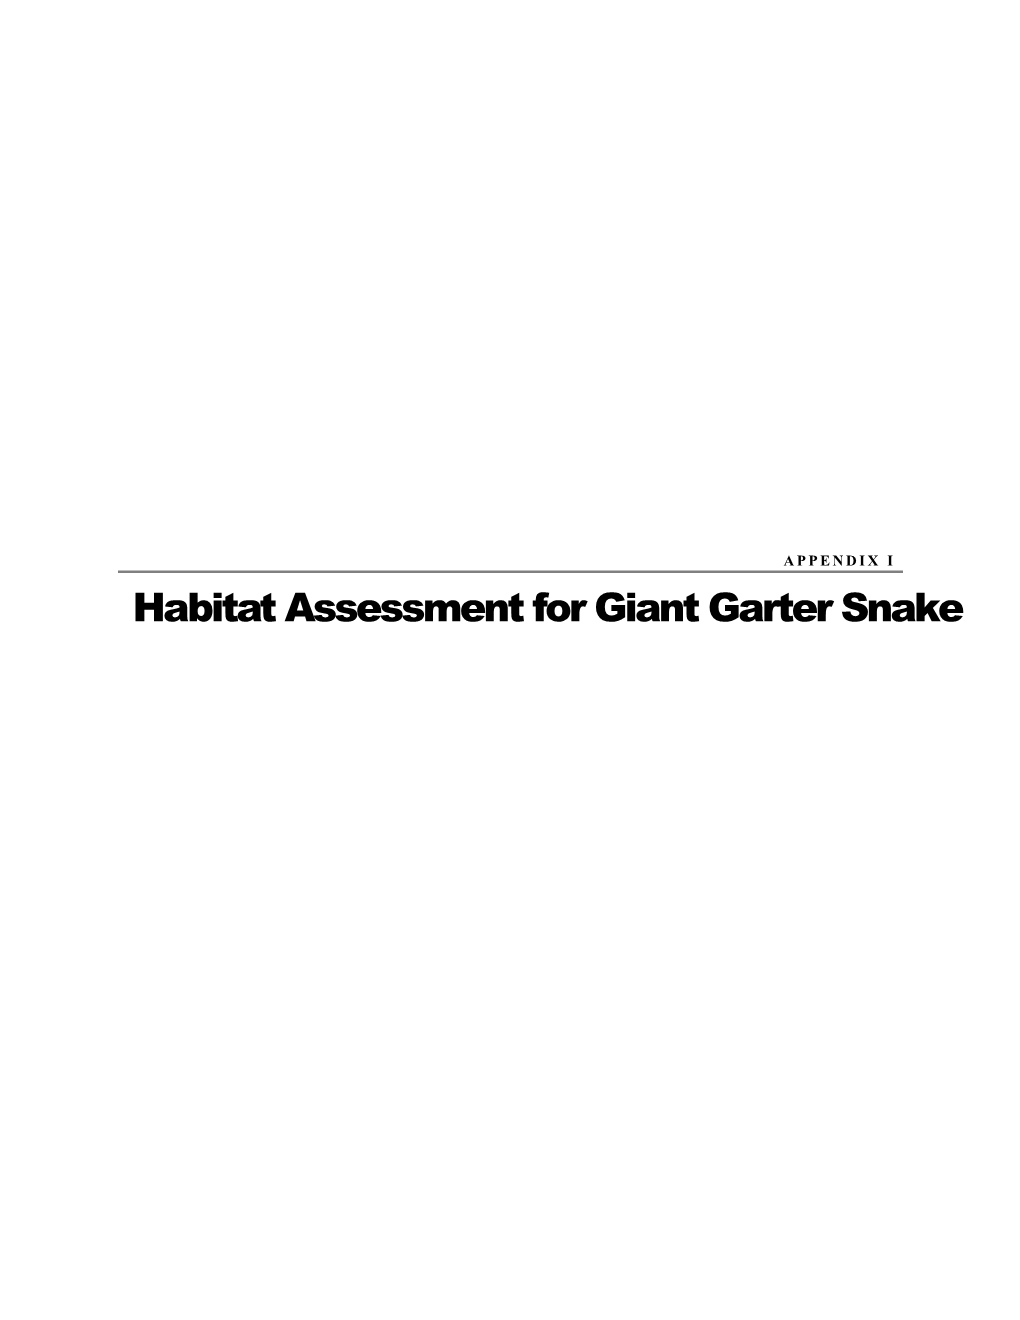 Habitat Assessment for Giant Garter Snake